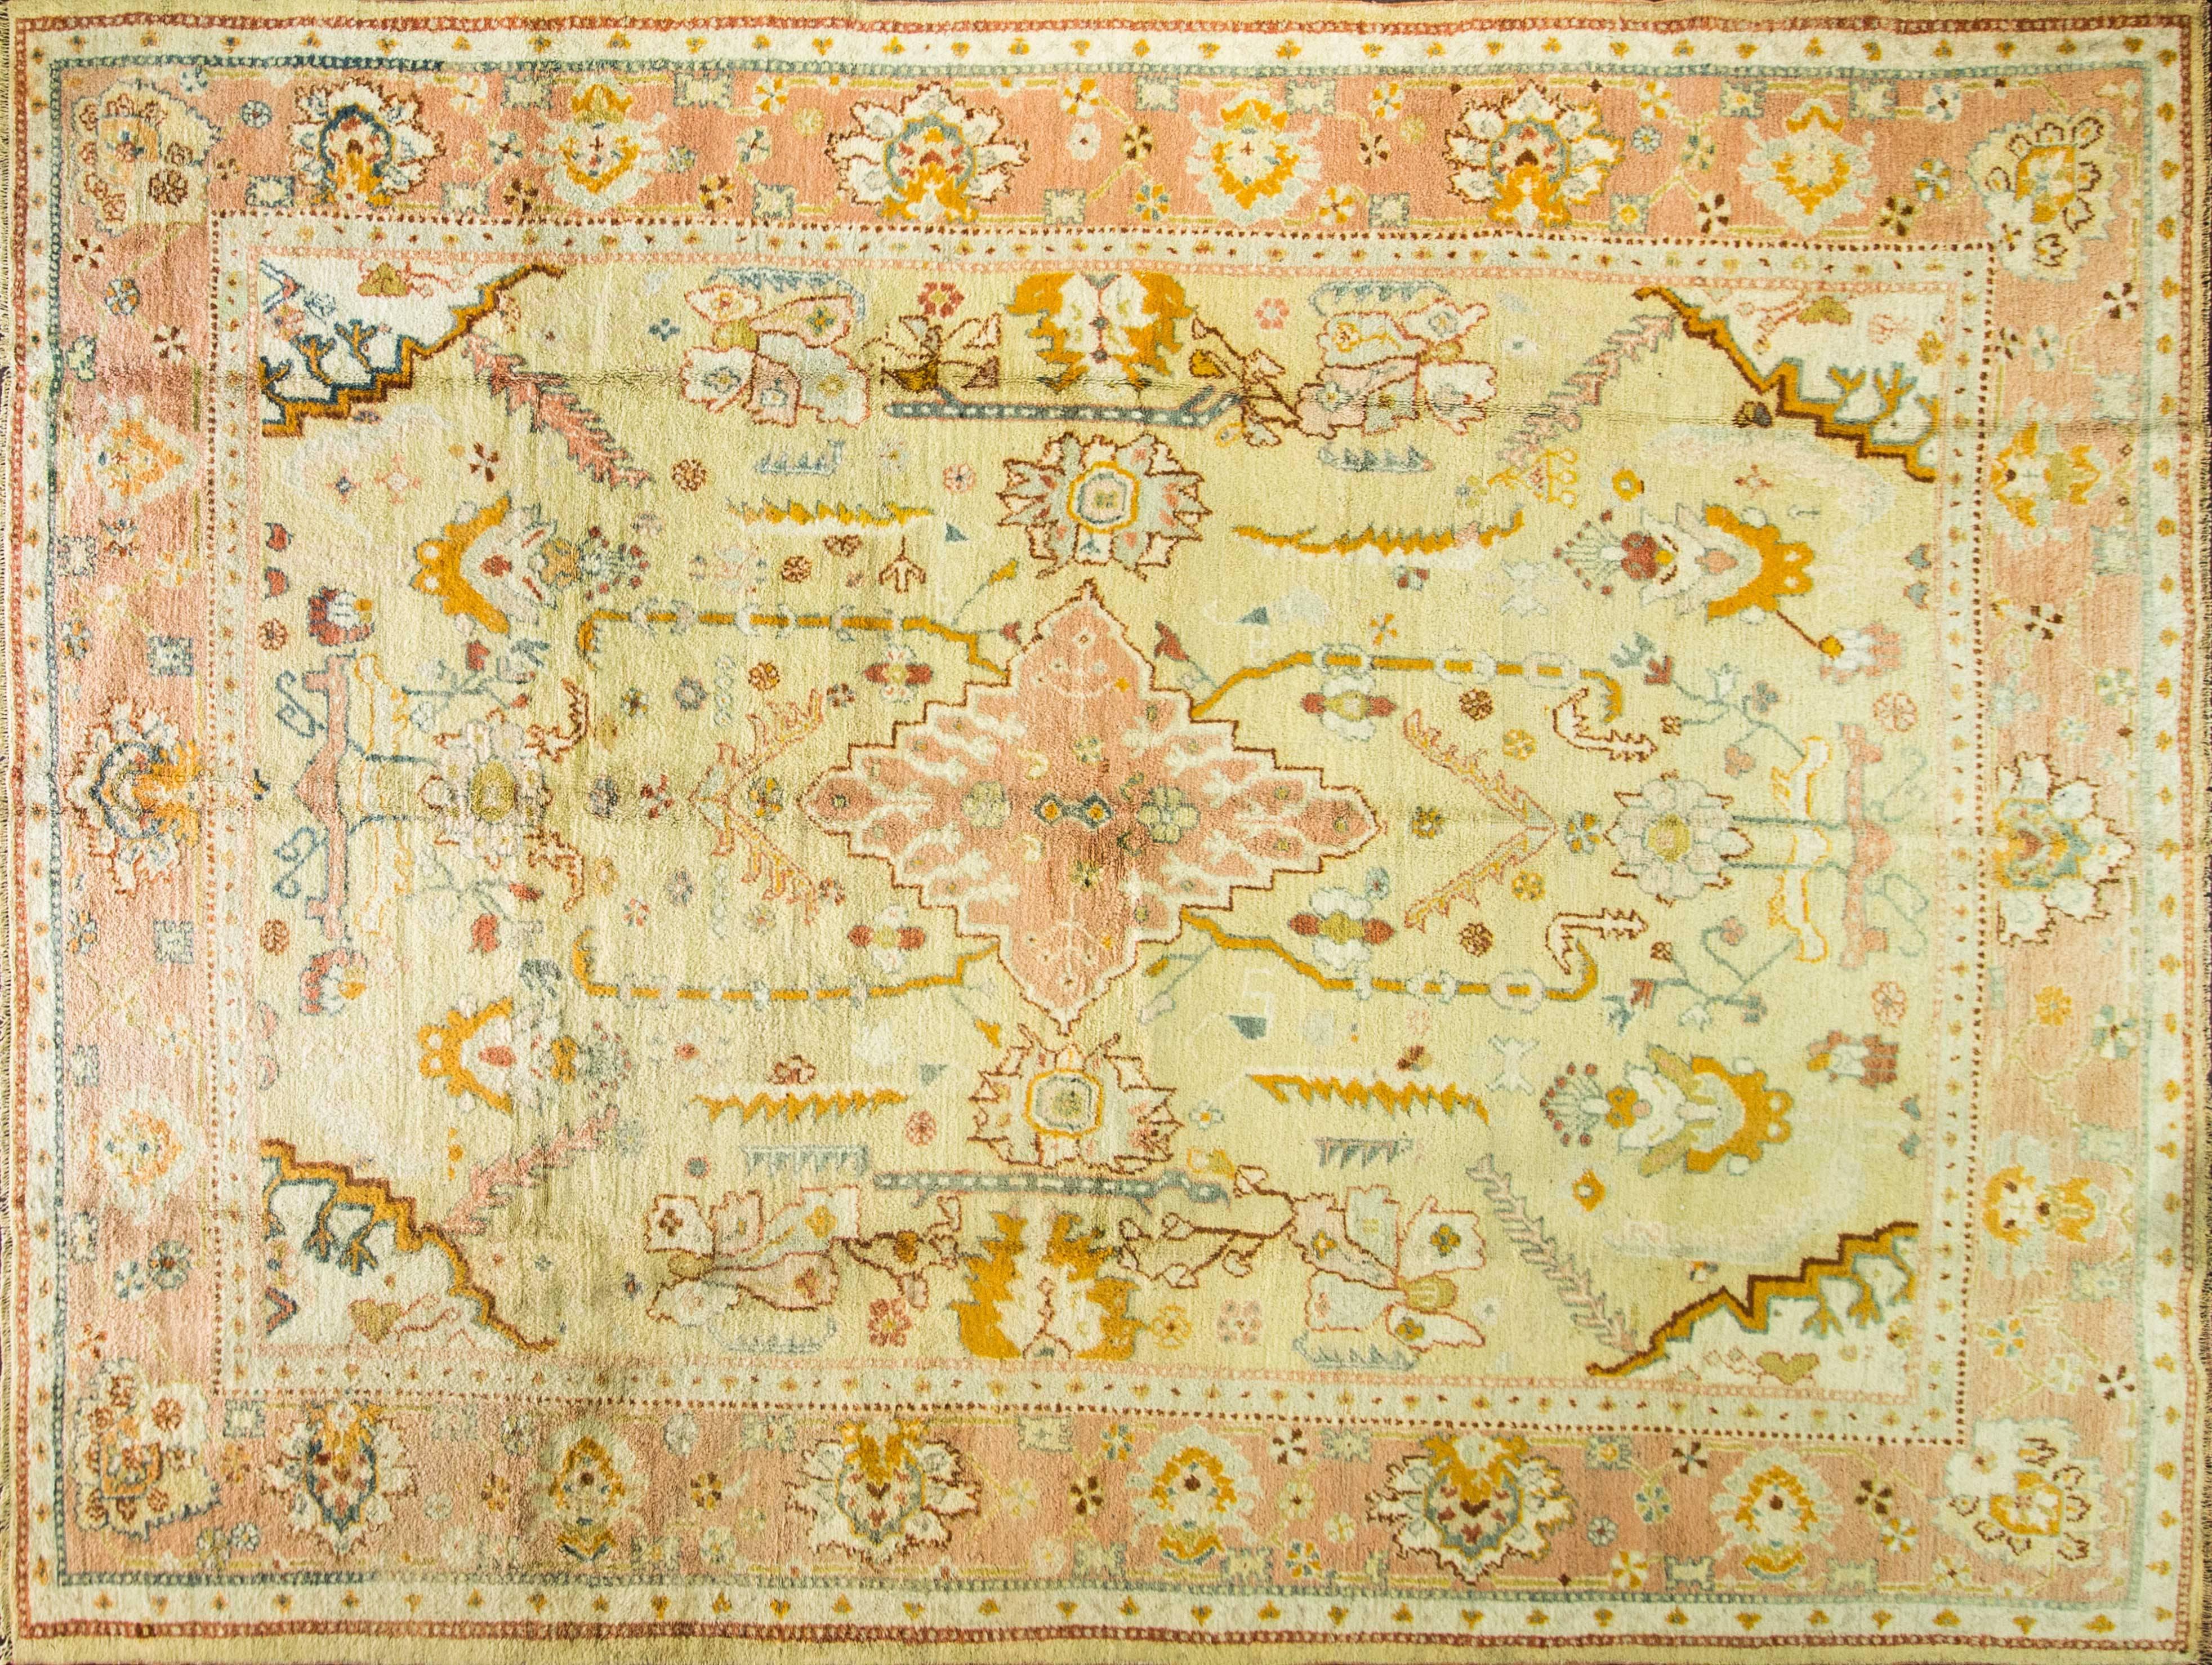 Les tapis d'Ushak sont produits depuis le 15e siècle avec une superbe laine et des teintures naturelles. Contrairement aux autres tapis de Turquie, les tapis d'Oushak sont influencés par les tapis persans, les tapis tissés avec nœuds de Ghiordès